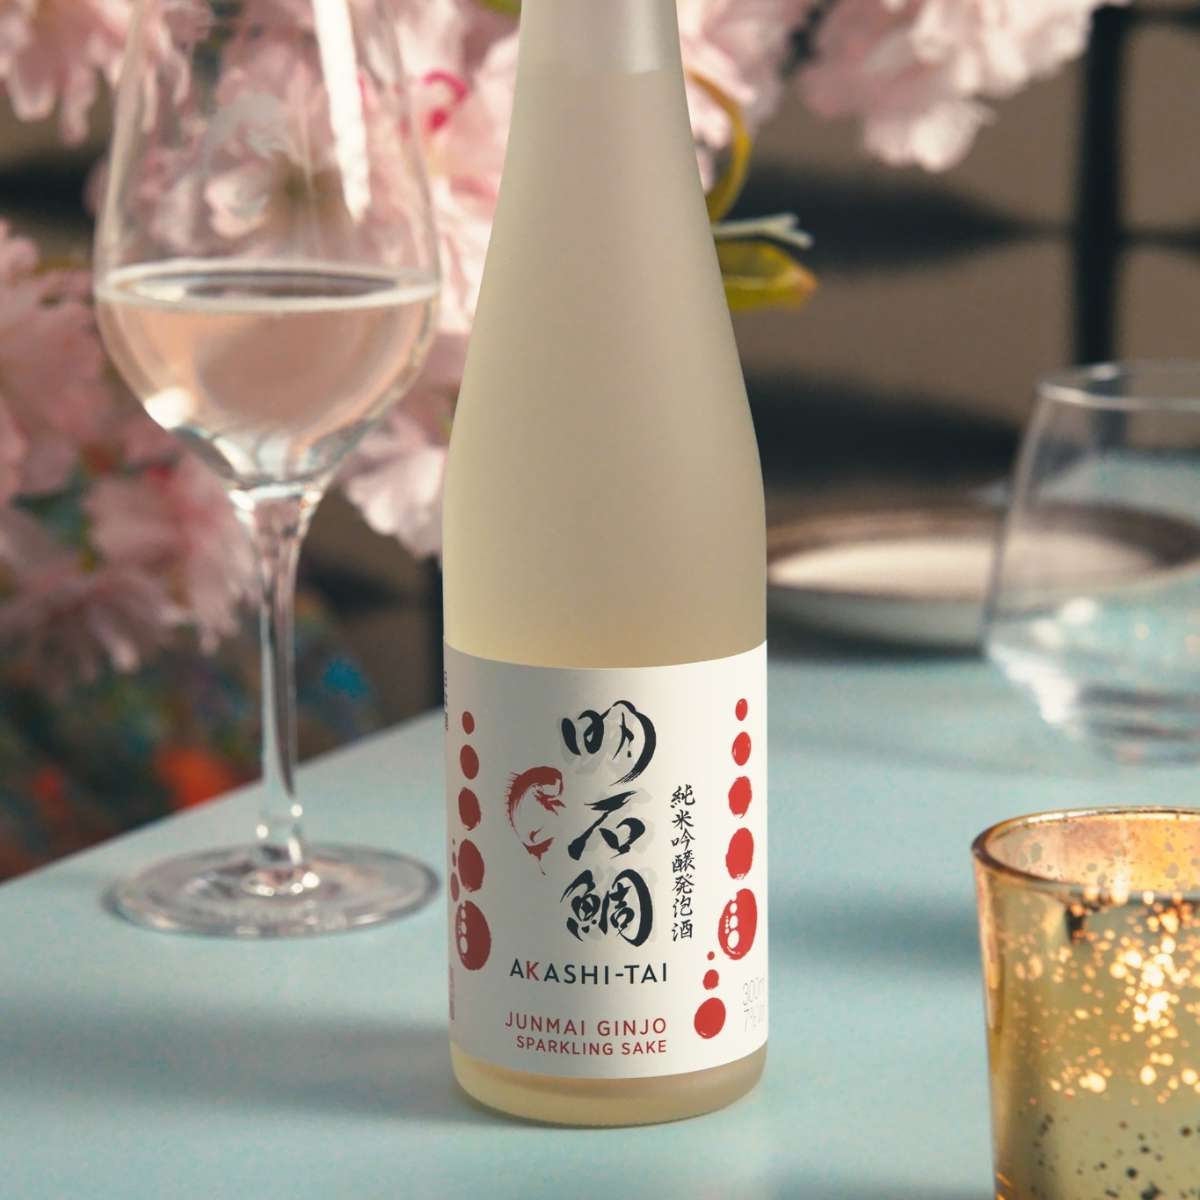 Akashi-Tai Junmai Ginjo Sparkling Sake (30cl)